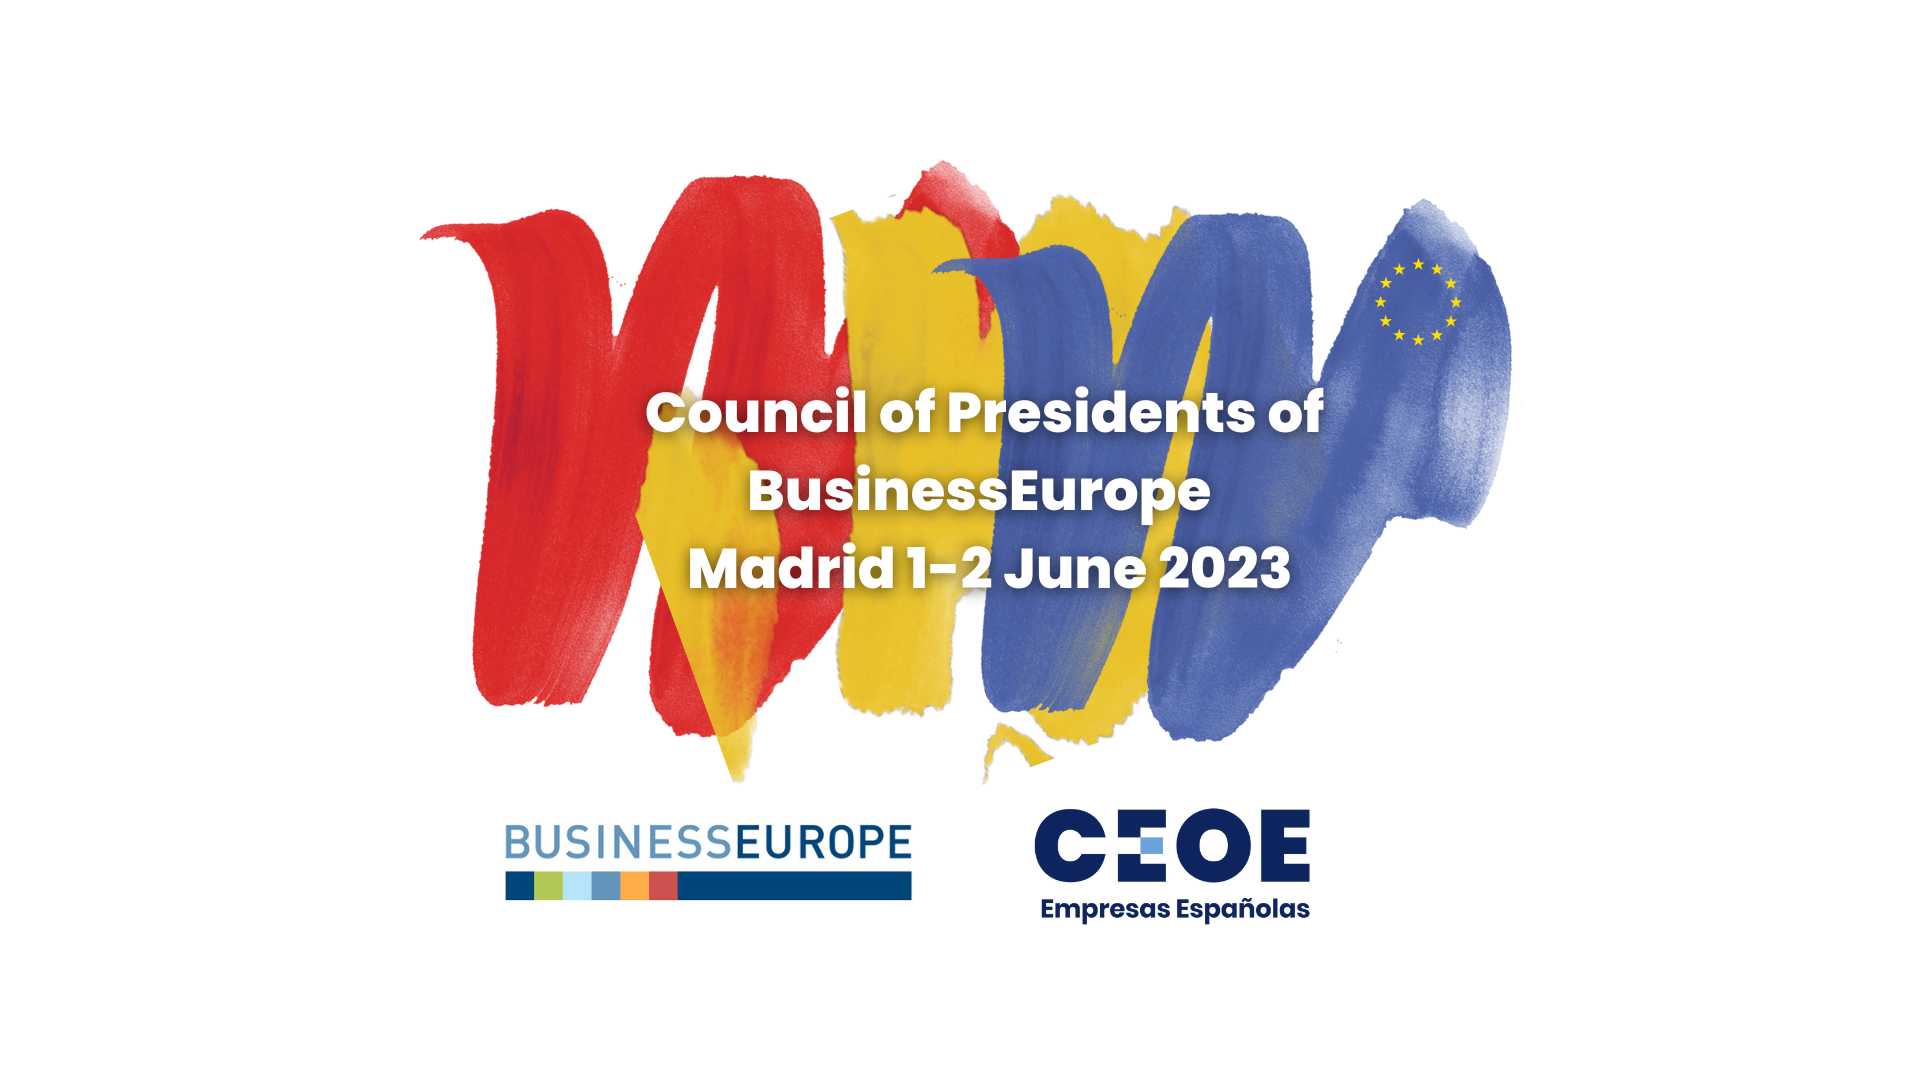 Съвет на президентите на BusinessEurope